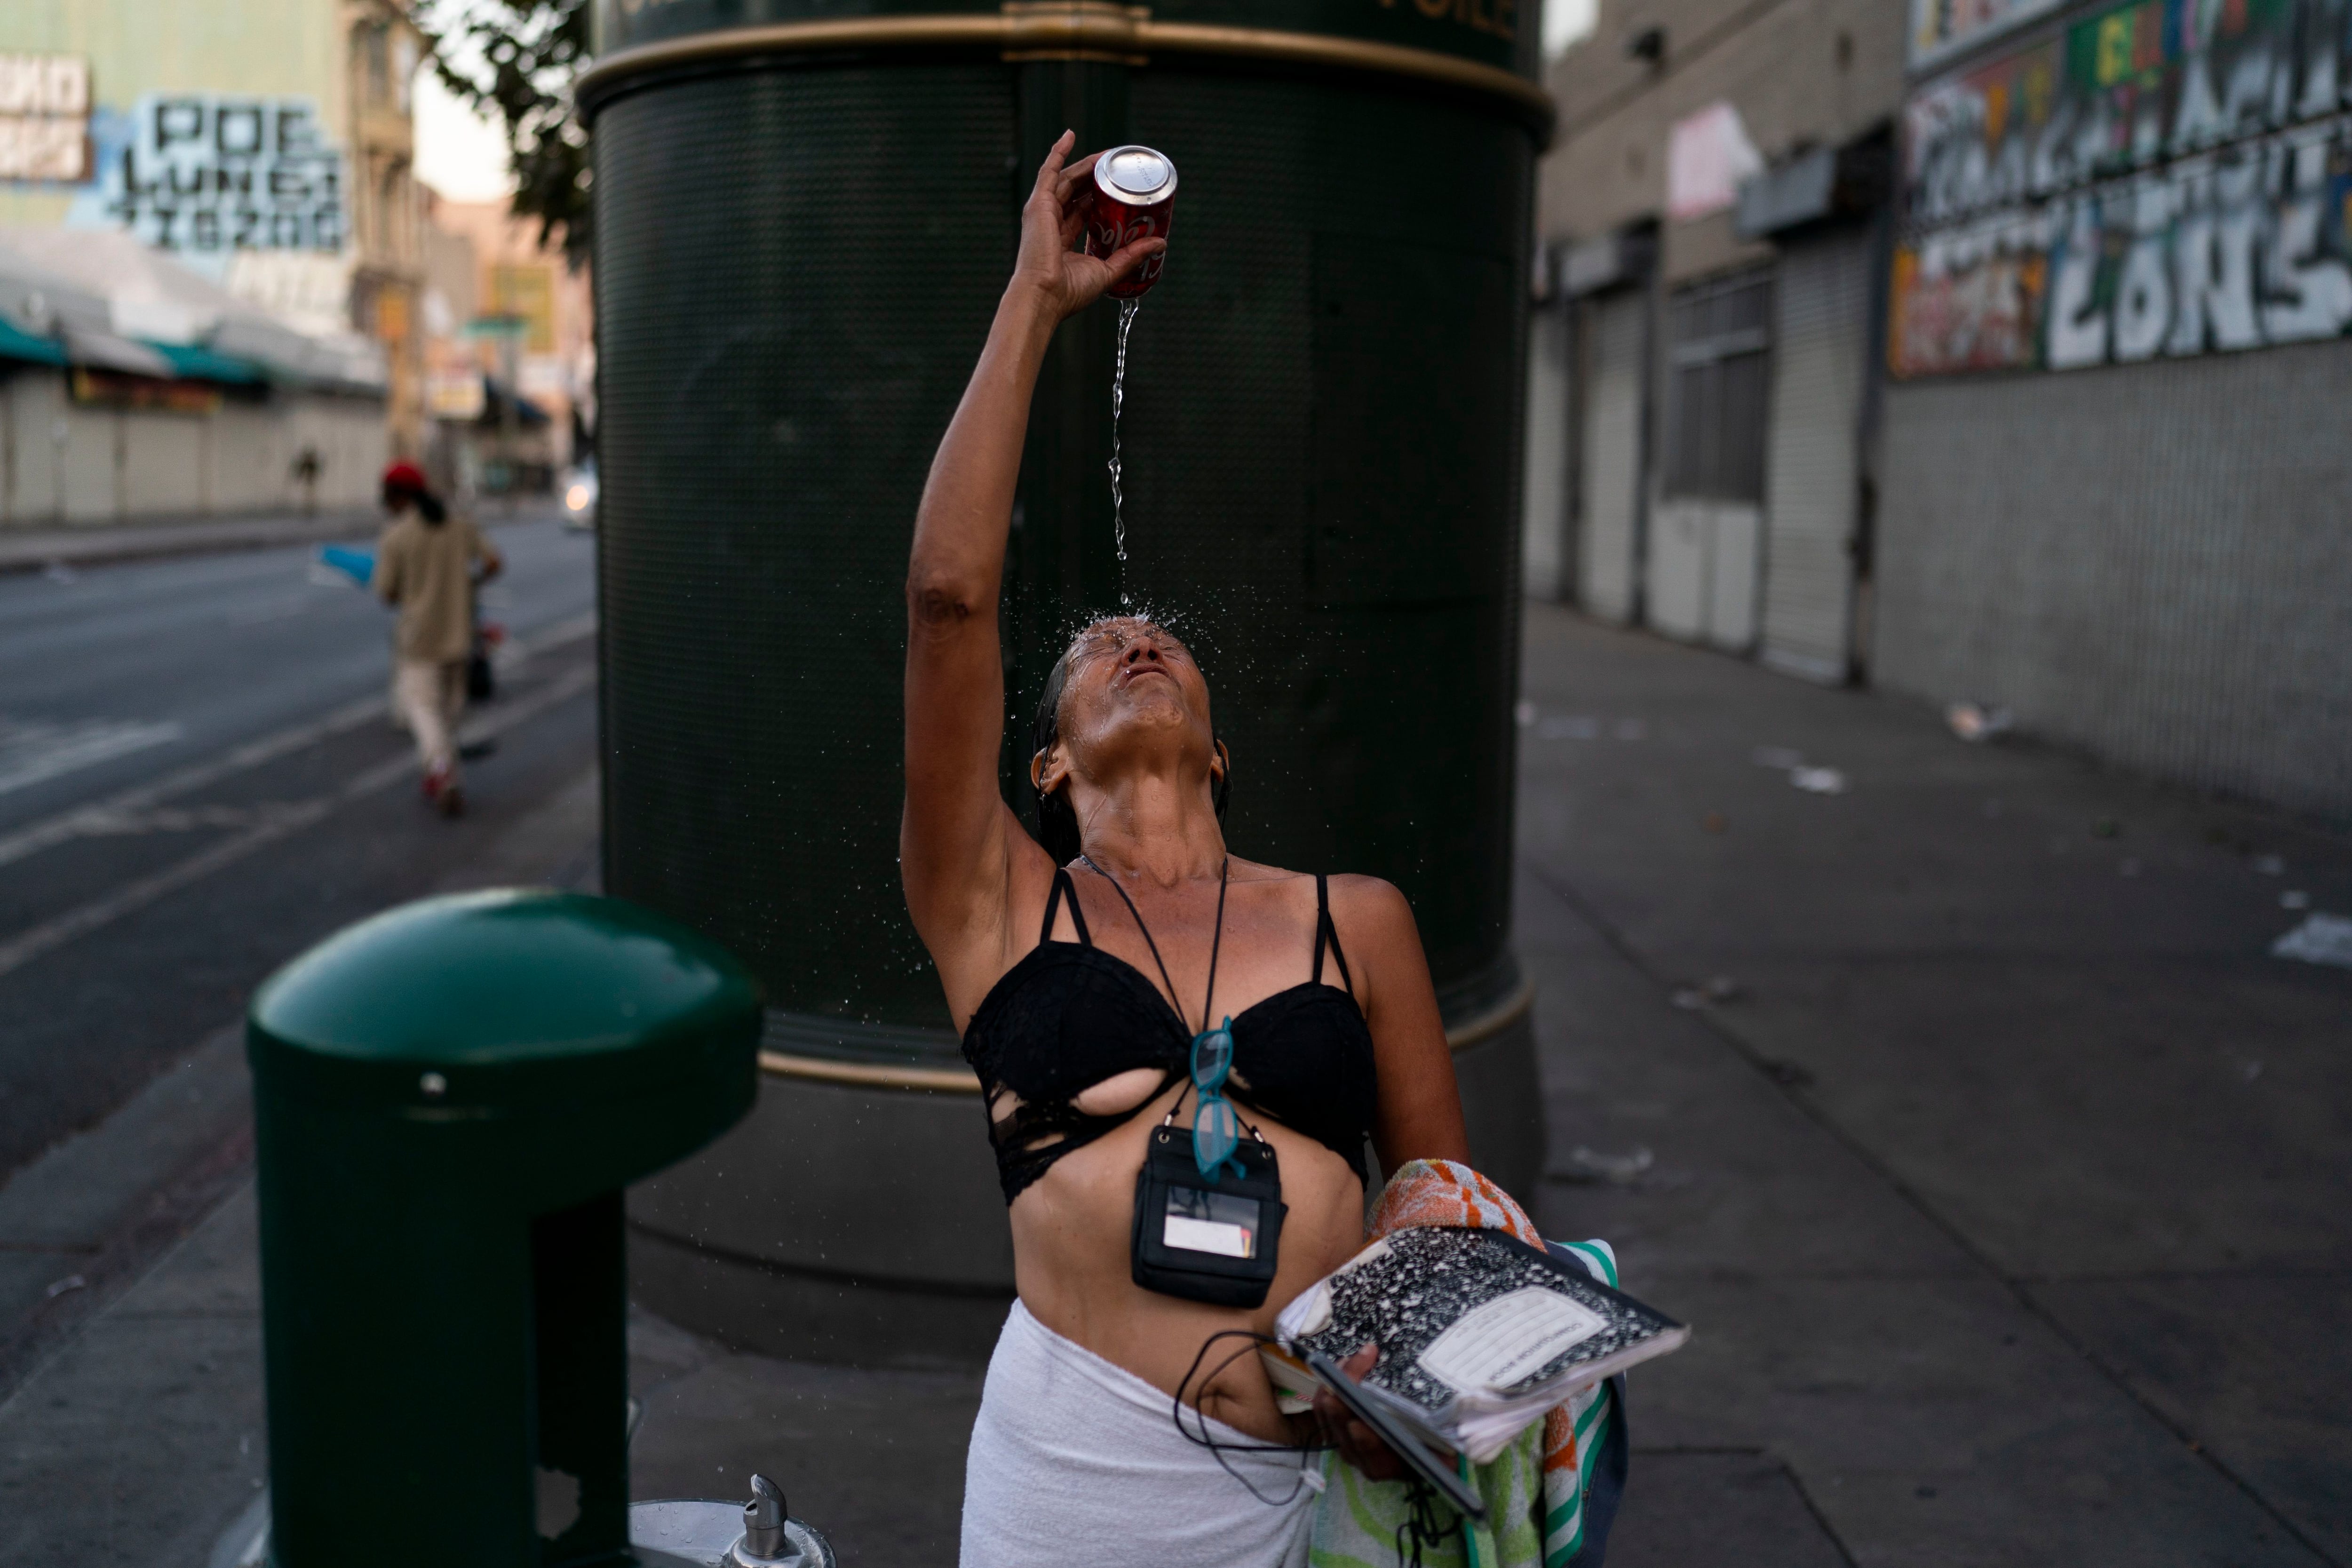 El fentanilo ocasiona estragos en las calles de estados Unidos al grado de que representa un alto índice de sobredosis por drogas sintéticas, que en ocasiones son letales. (AP Foto/Jae C. Hong)